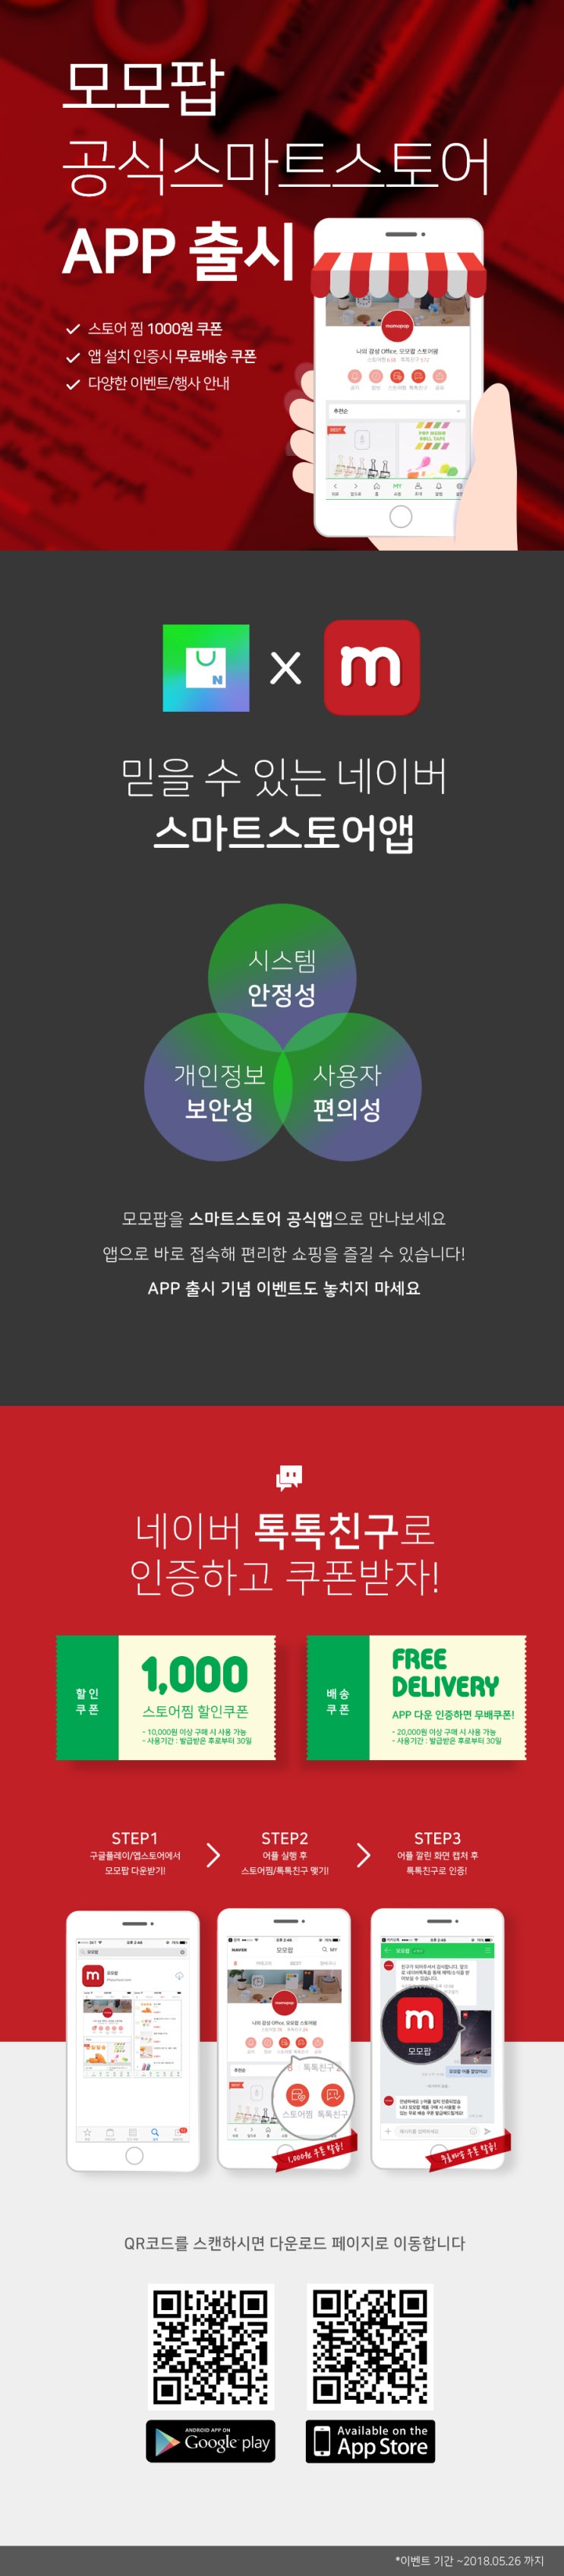 [쿠폰 이벤트] 스토어앱 출시 기념 EVENT 모모팝이 쏜다!